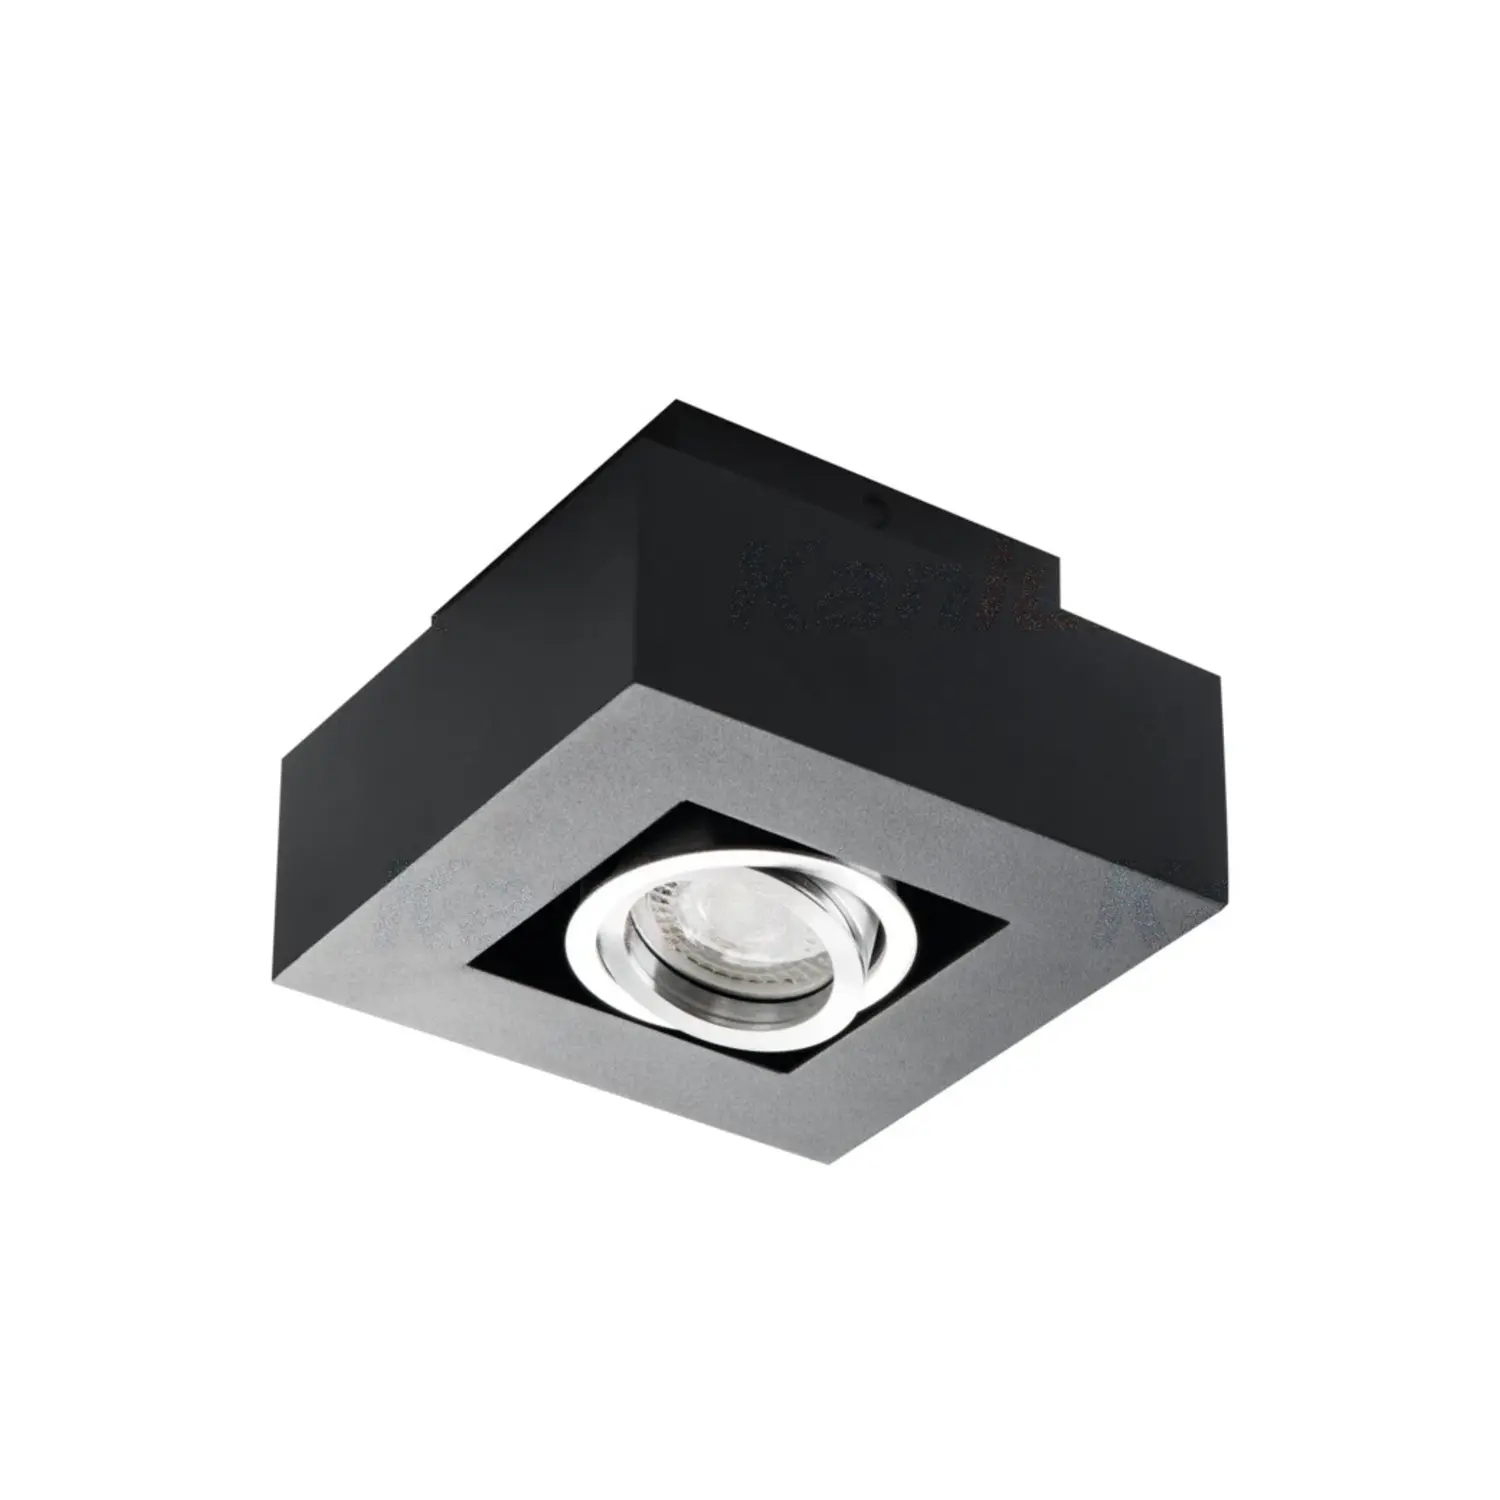 immagine del prodotto faretto decorativo stobi dlp orientabile nero IP20 interno GU10 CE alluminio 220-240 volt 1 luce kan 26830